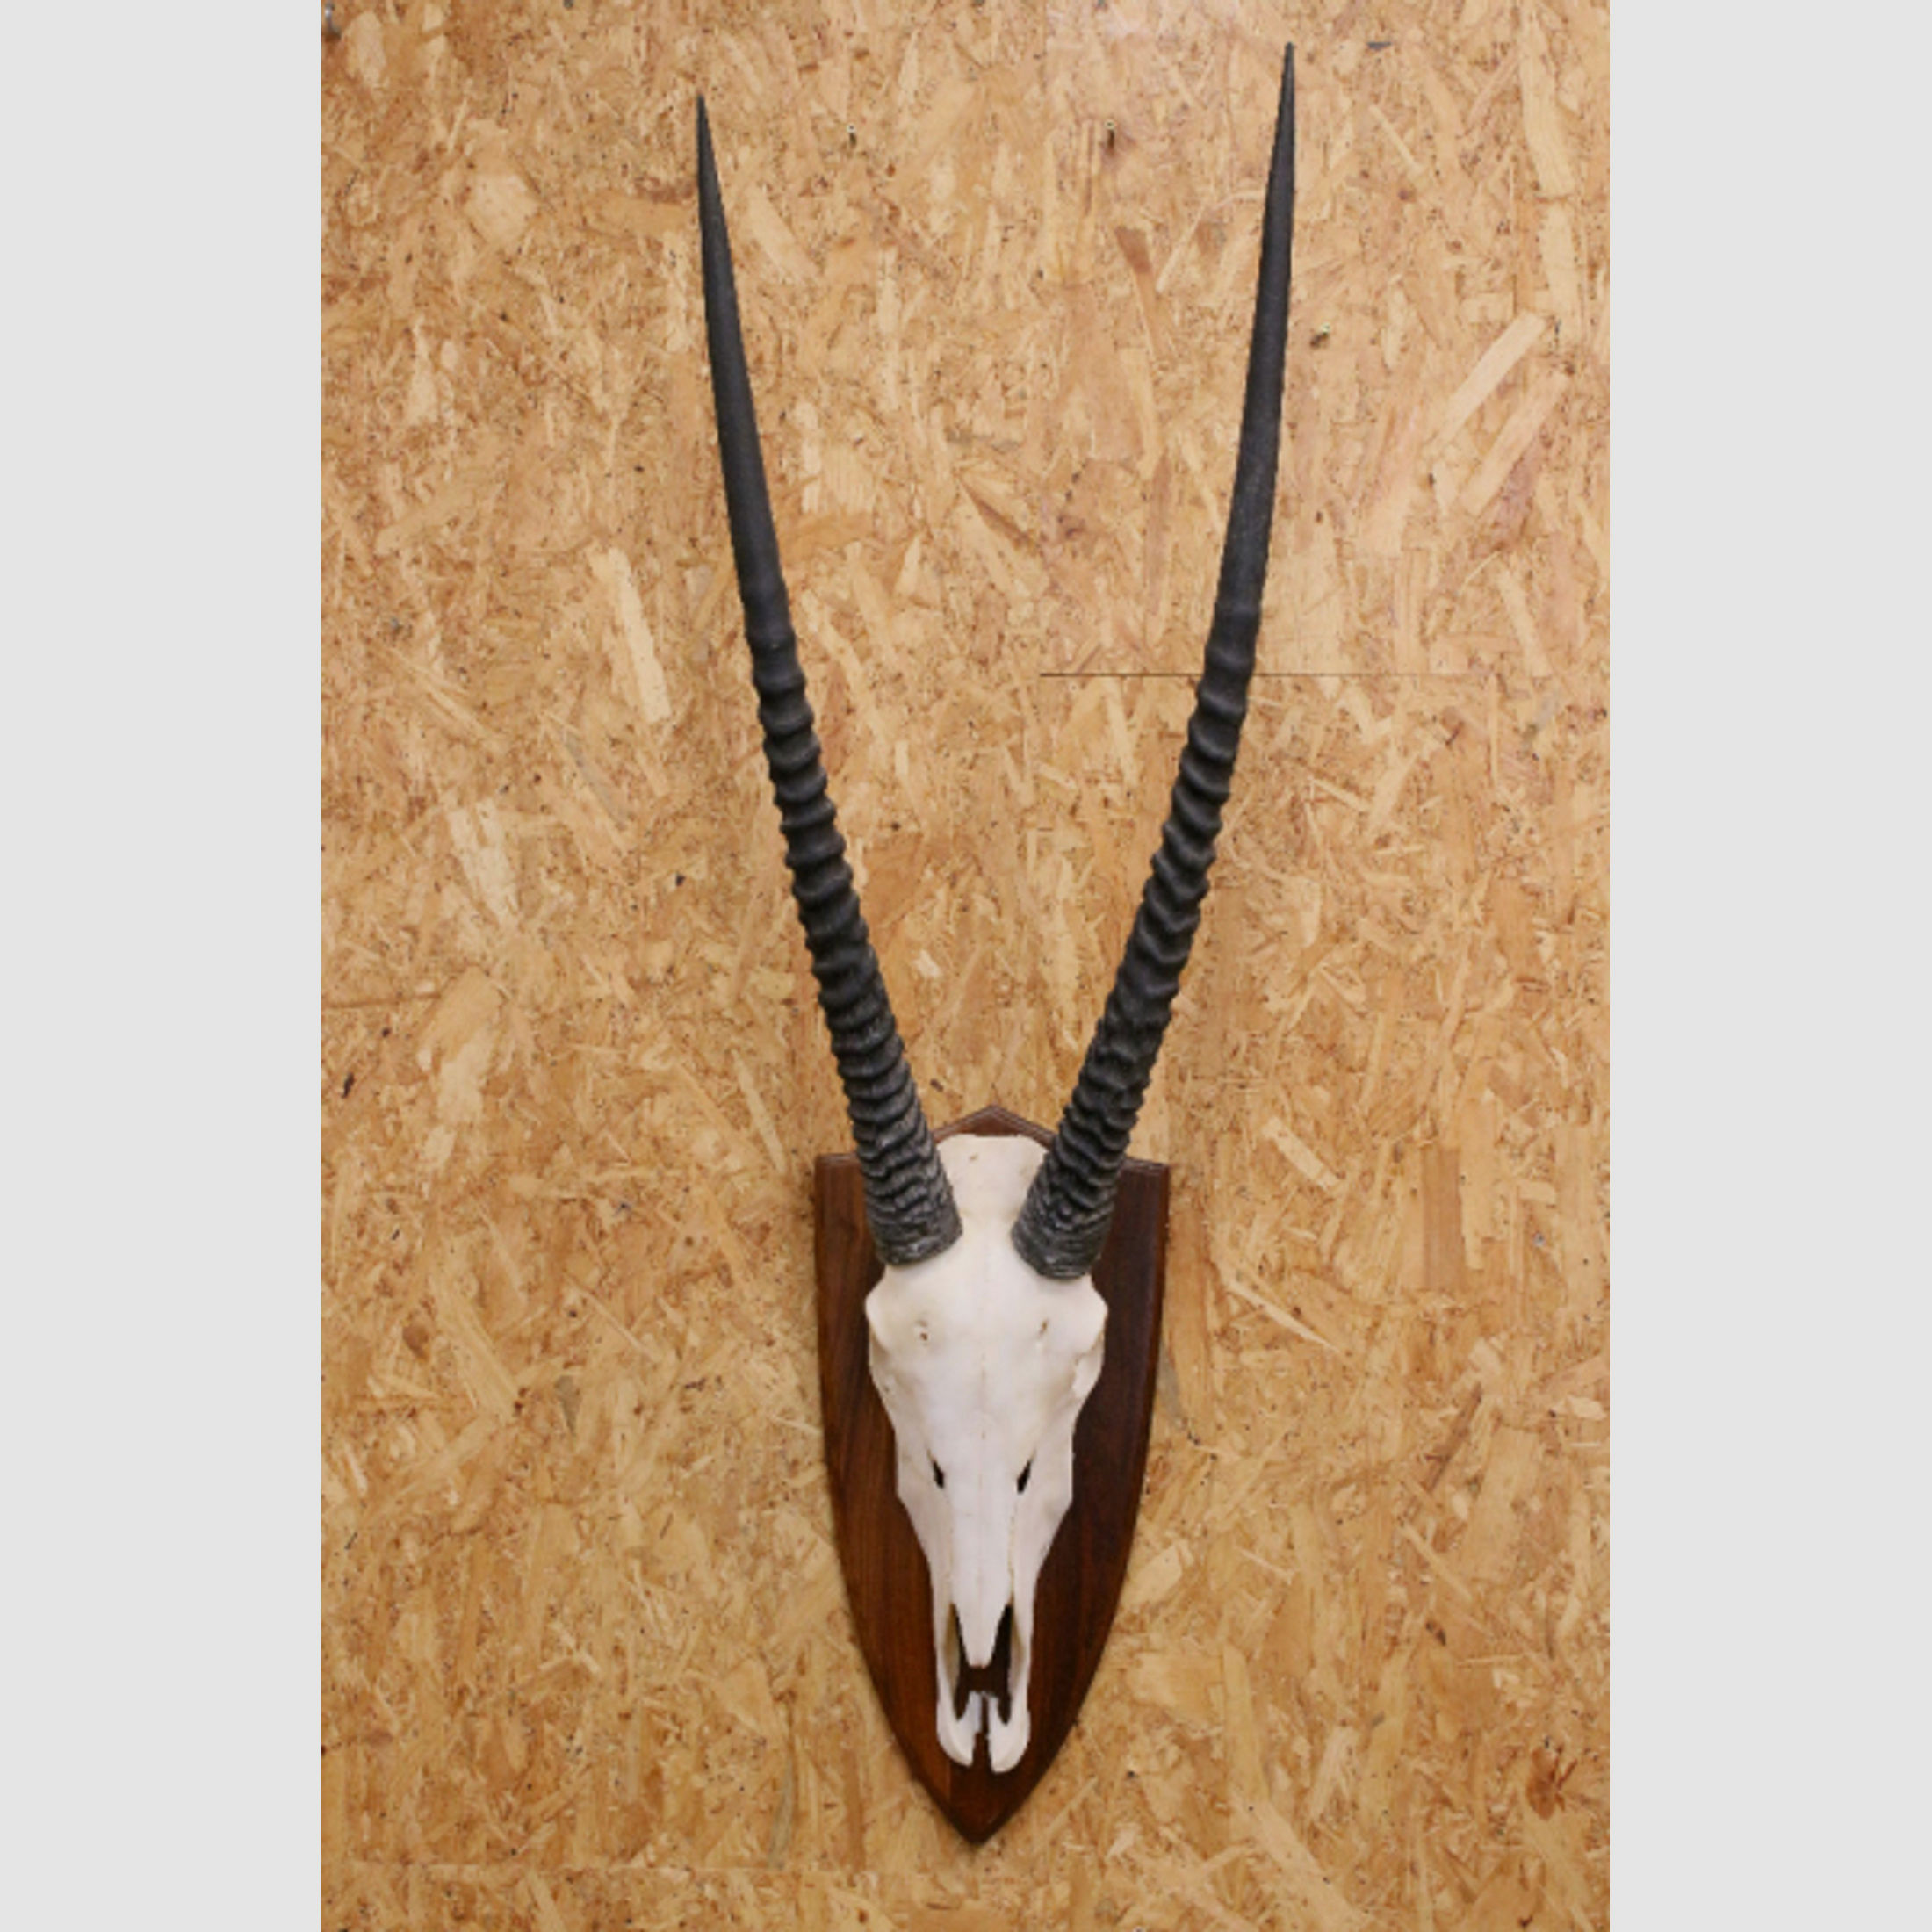 Afrika-Trophäe einer Oryx-Antilope